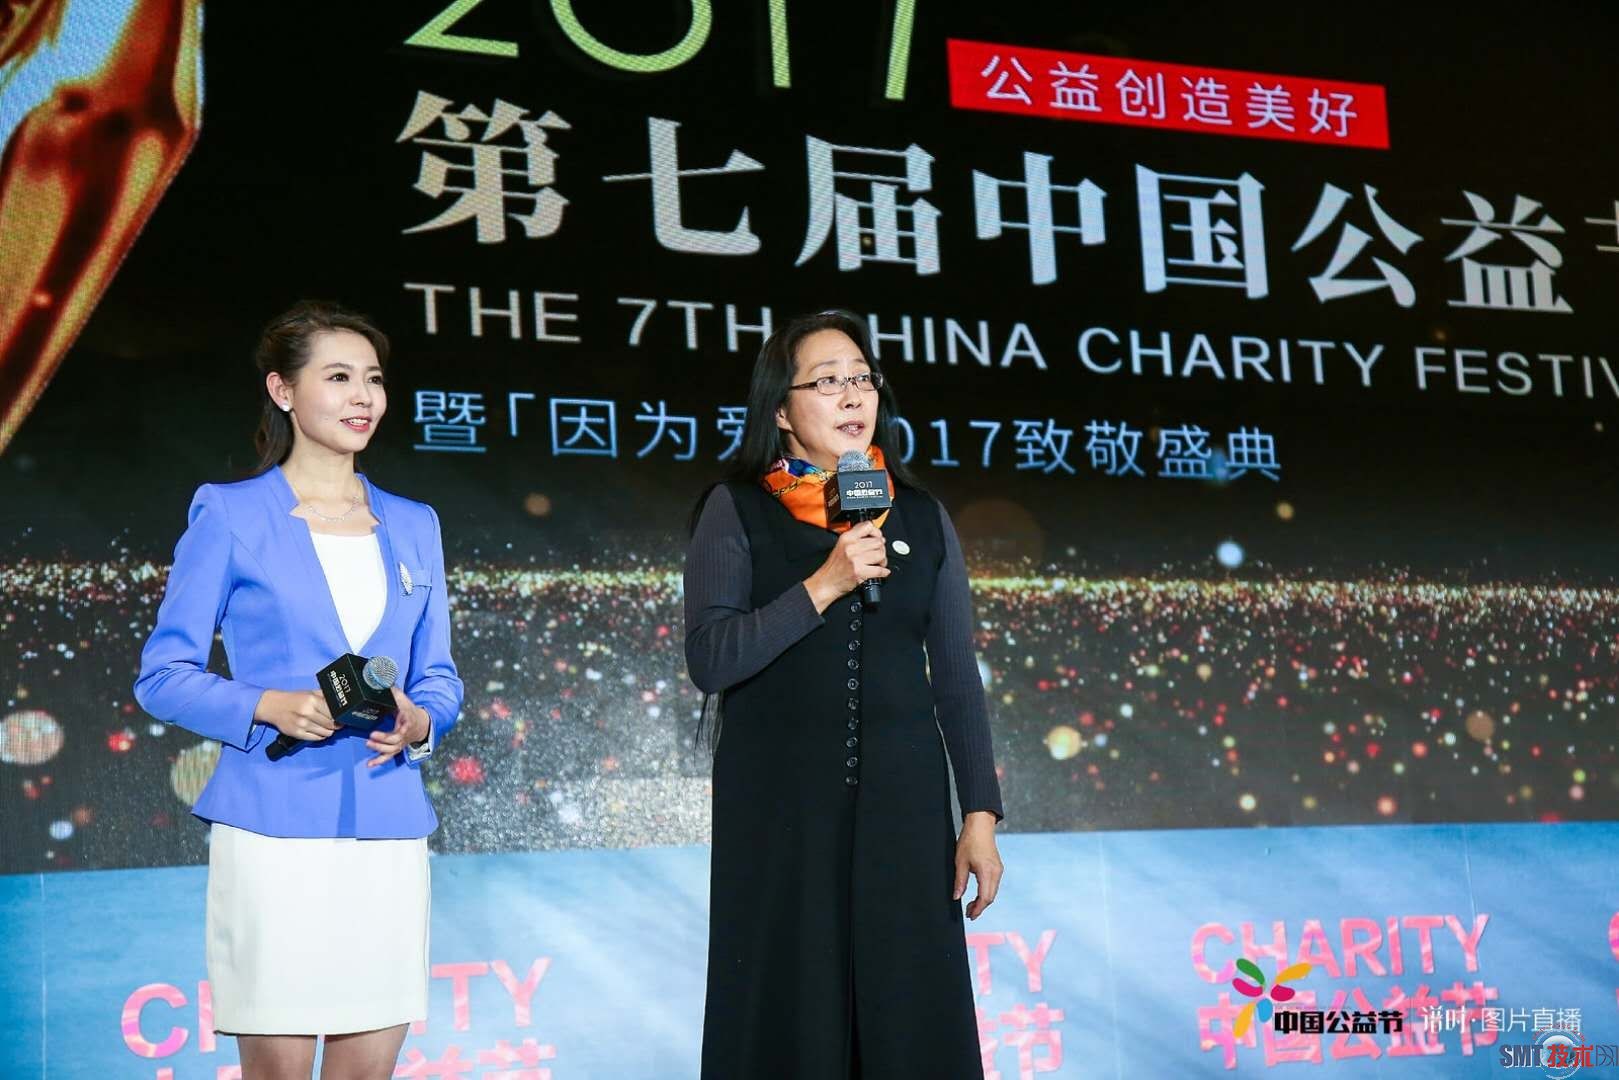 空气产品公司中国区总裁冯燕女士作为获奖嘉宾代表发言1.jpg